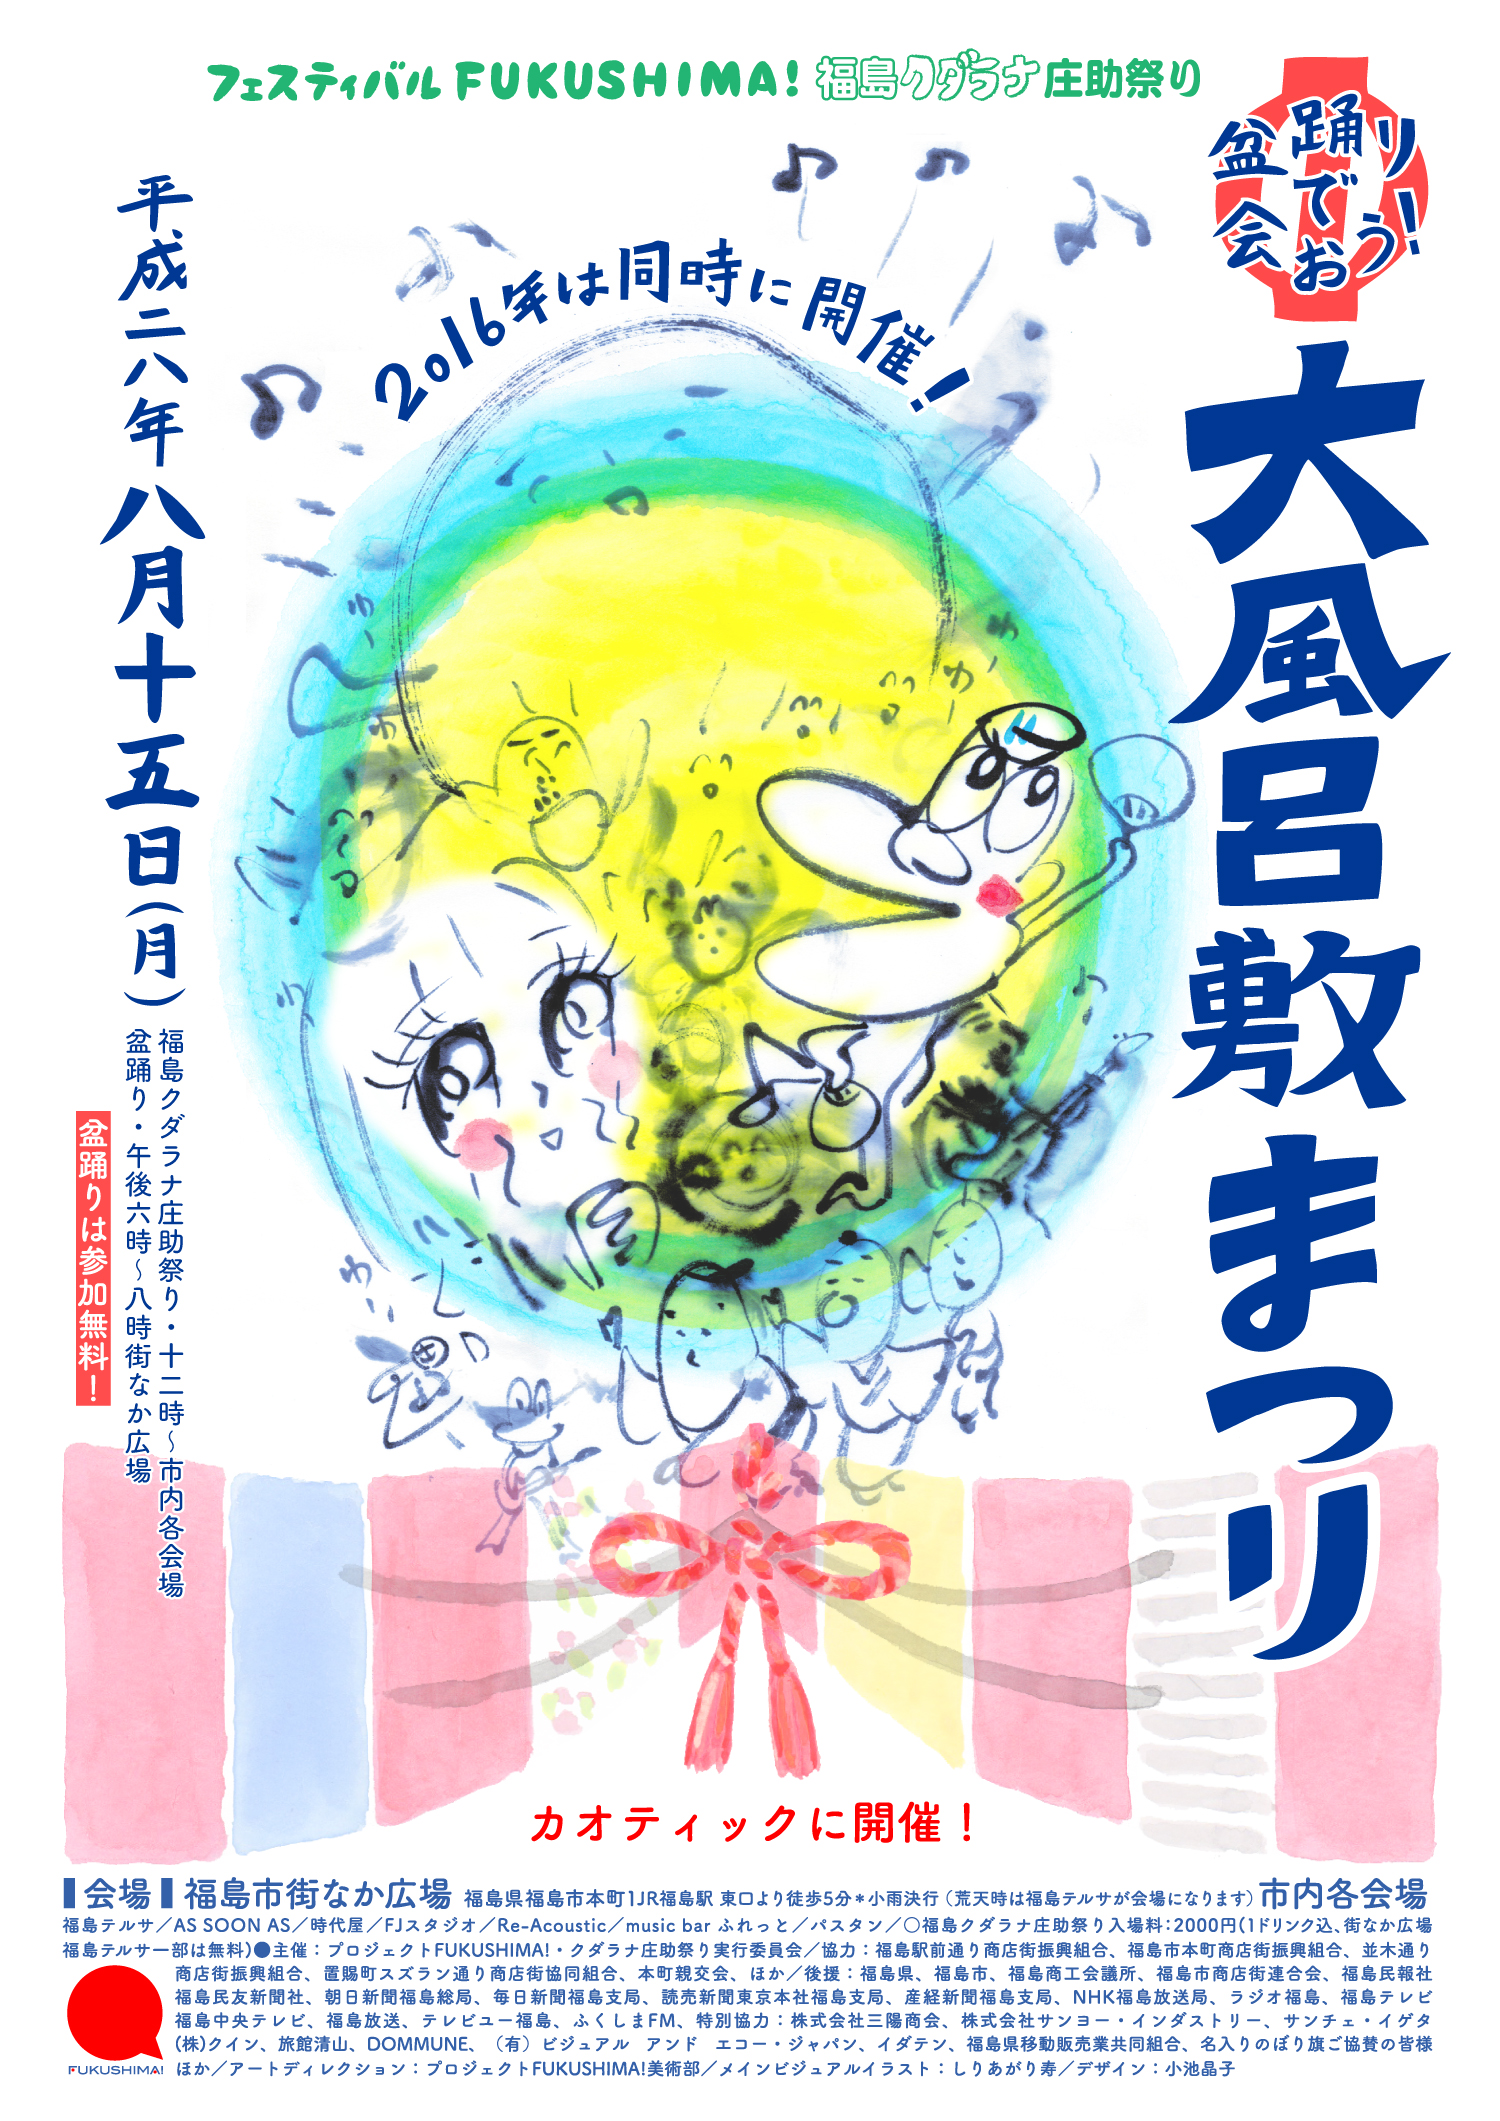 Festival Fukushima!, 6eme édition, 15 août 2016